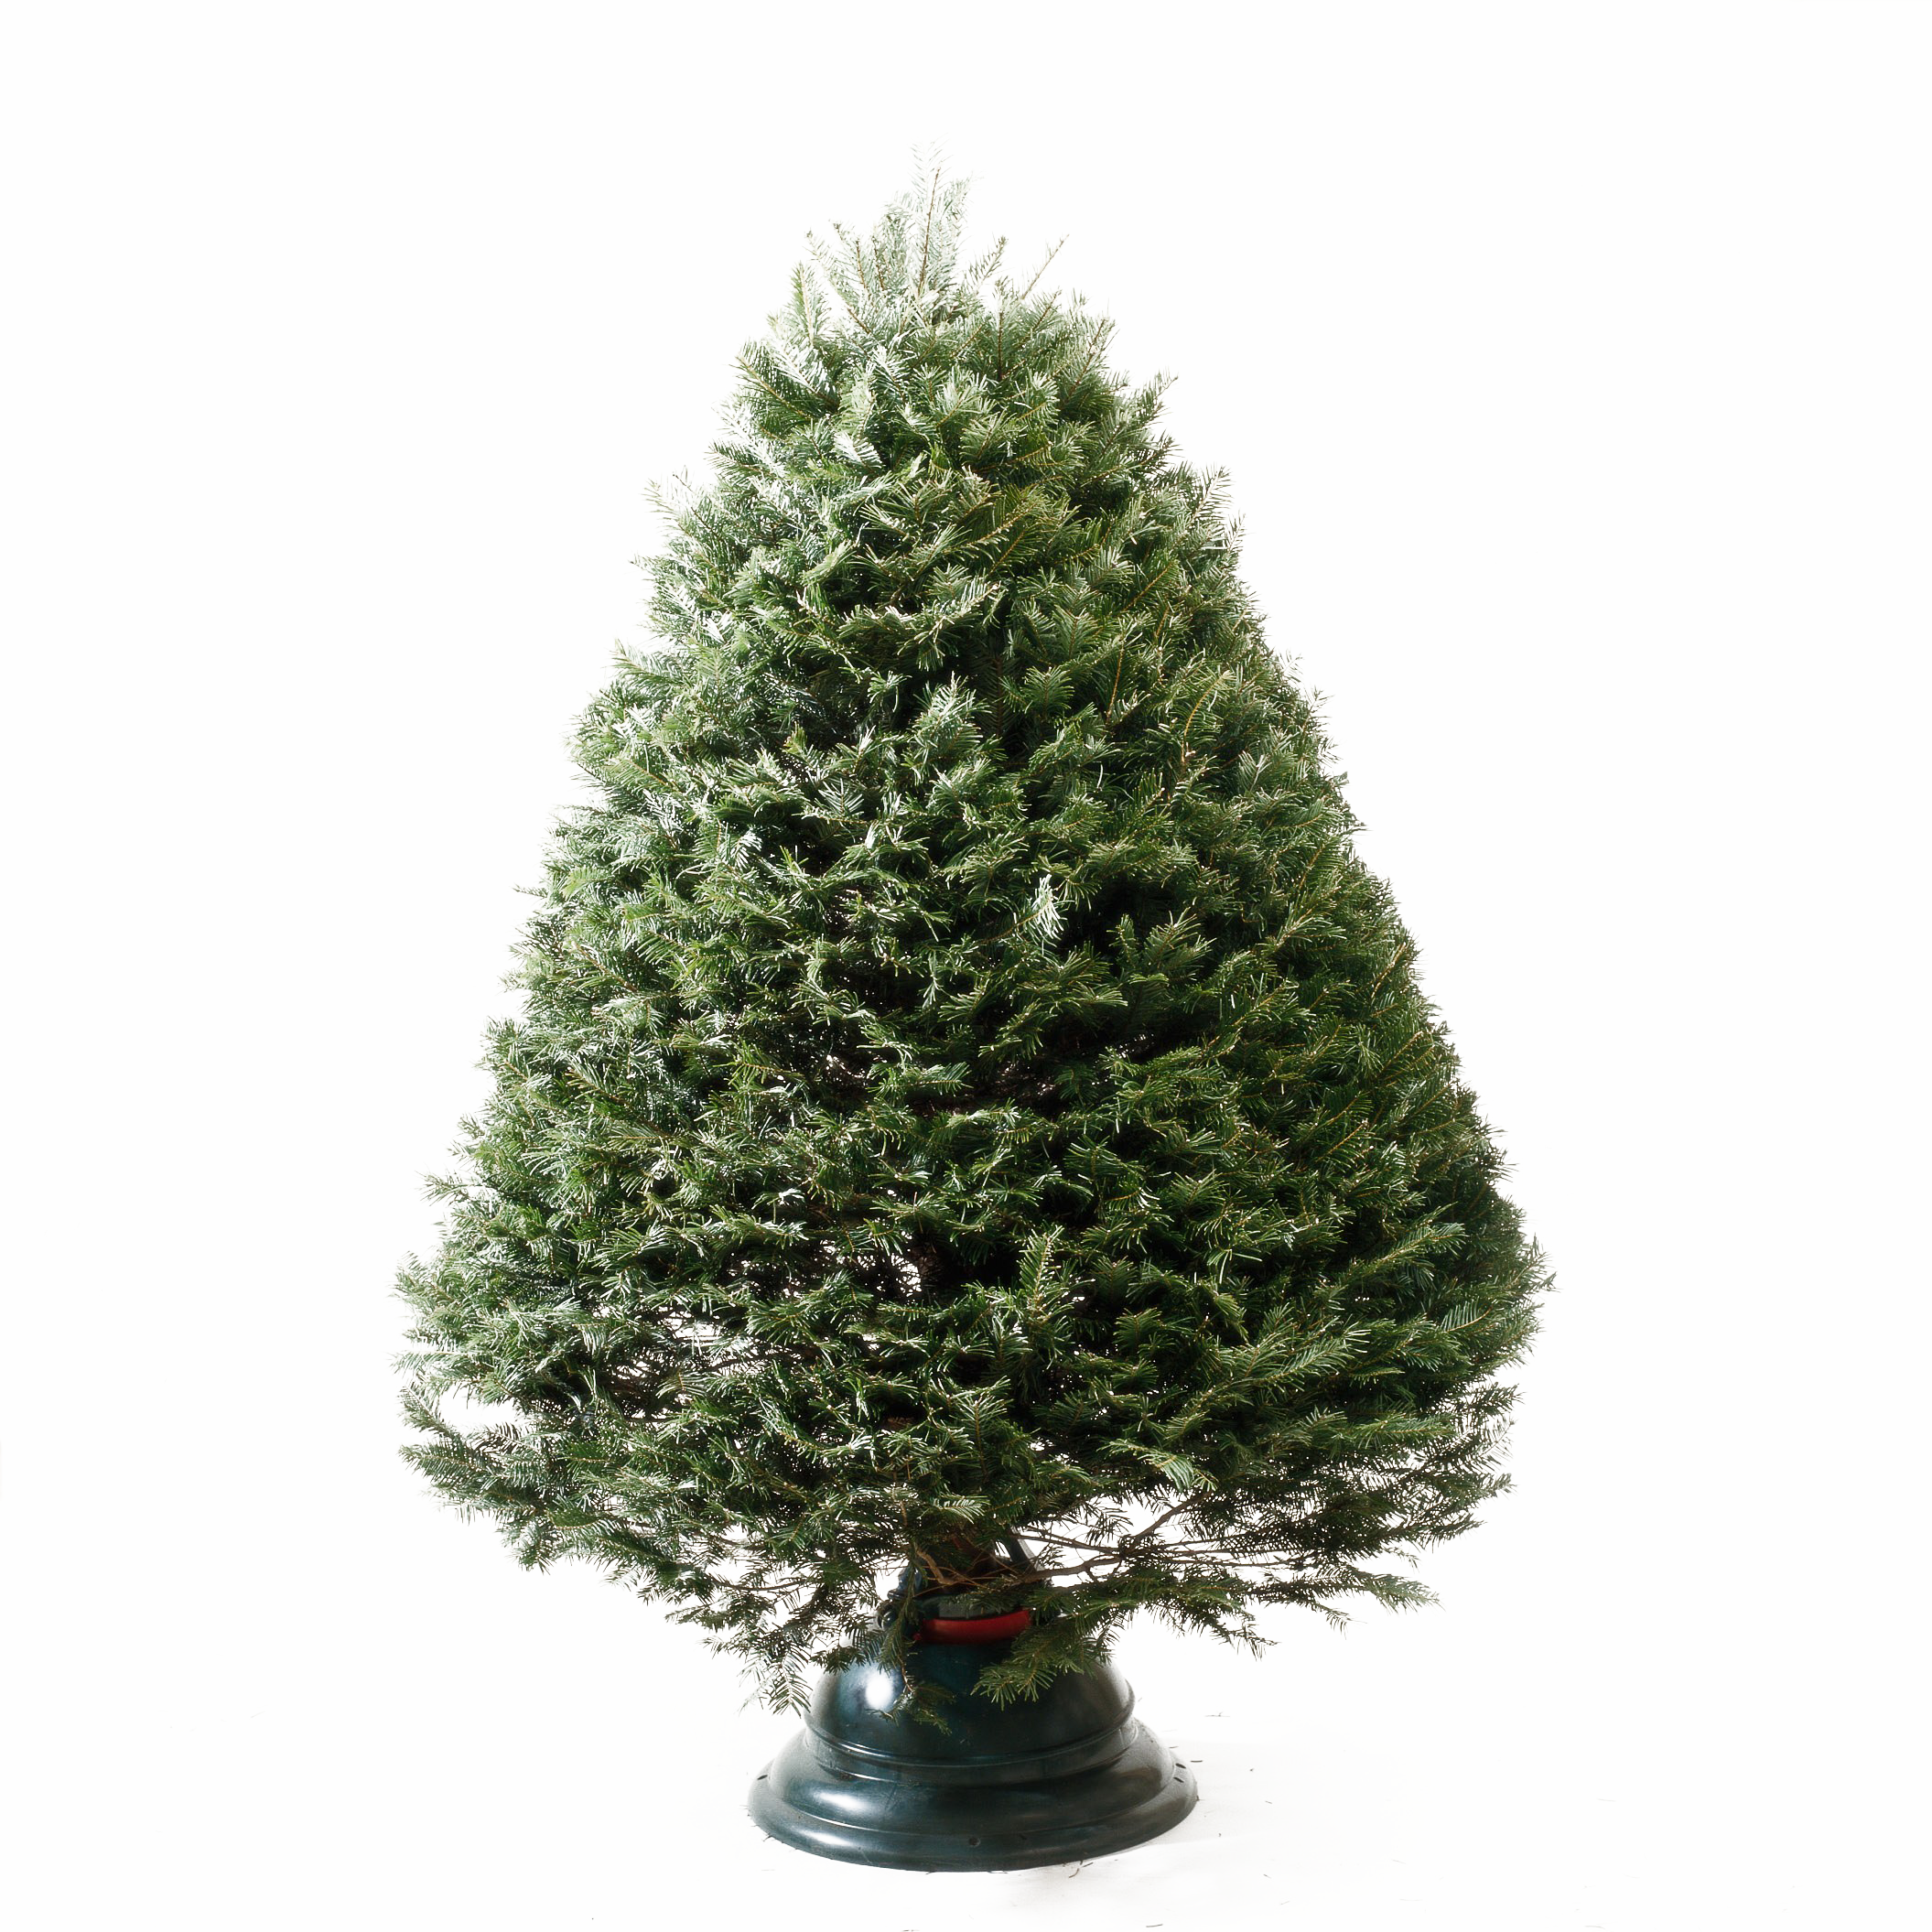 Immagine Trasparente del pino del pino di Natale